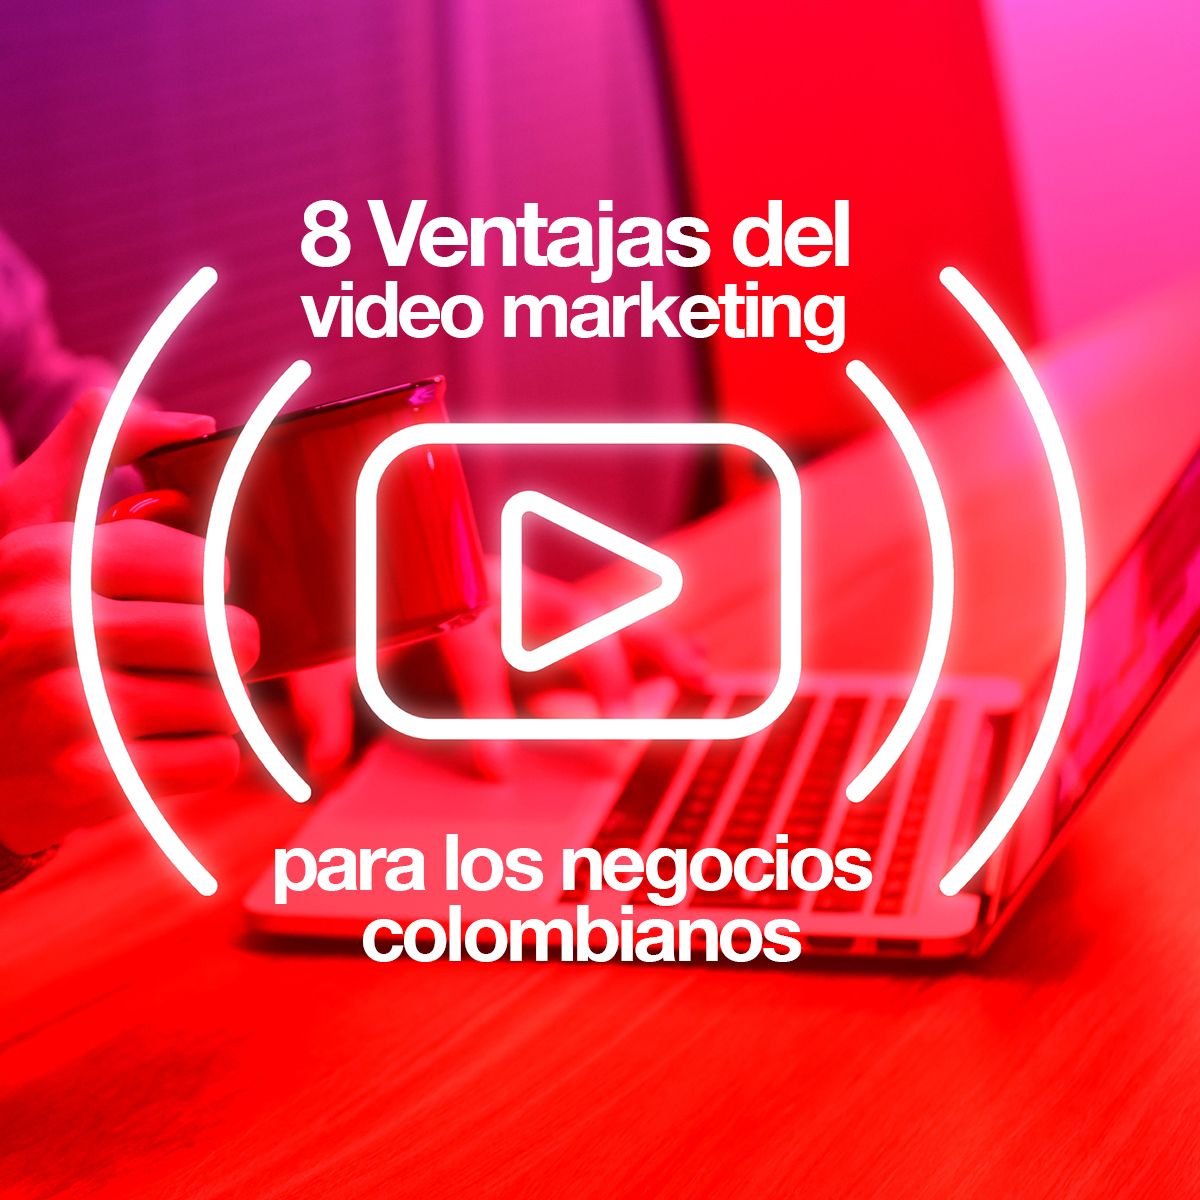 8 Ventajas del video marketing para los negocios en colombia